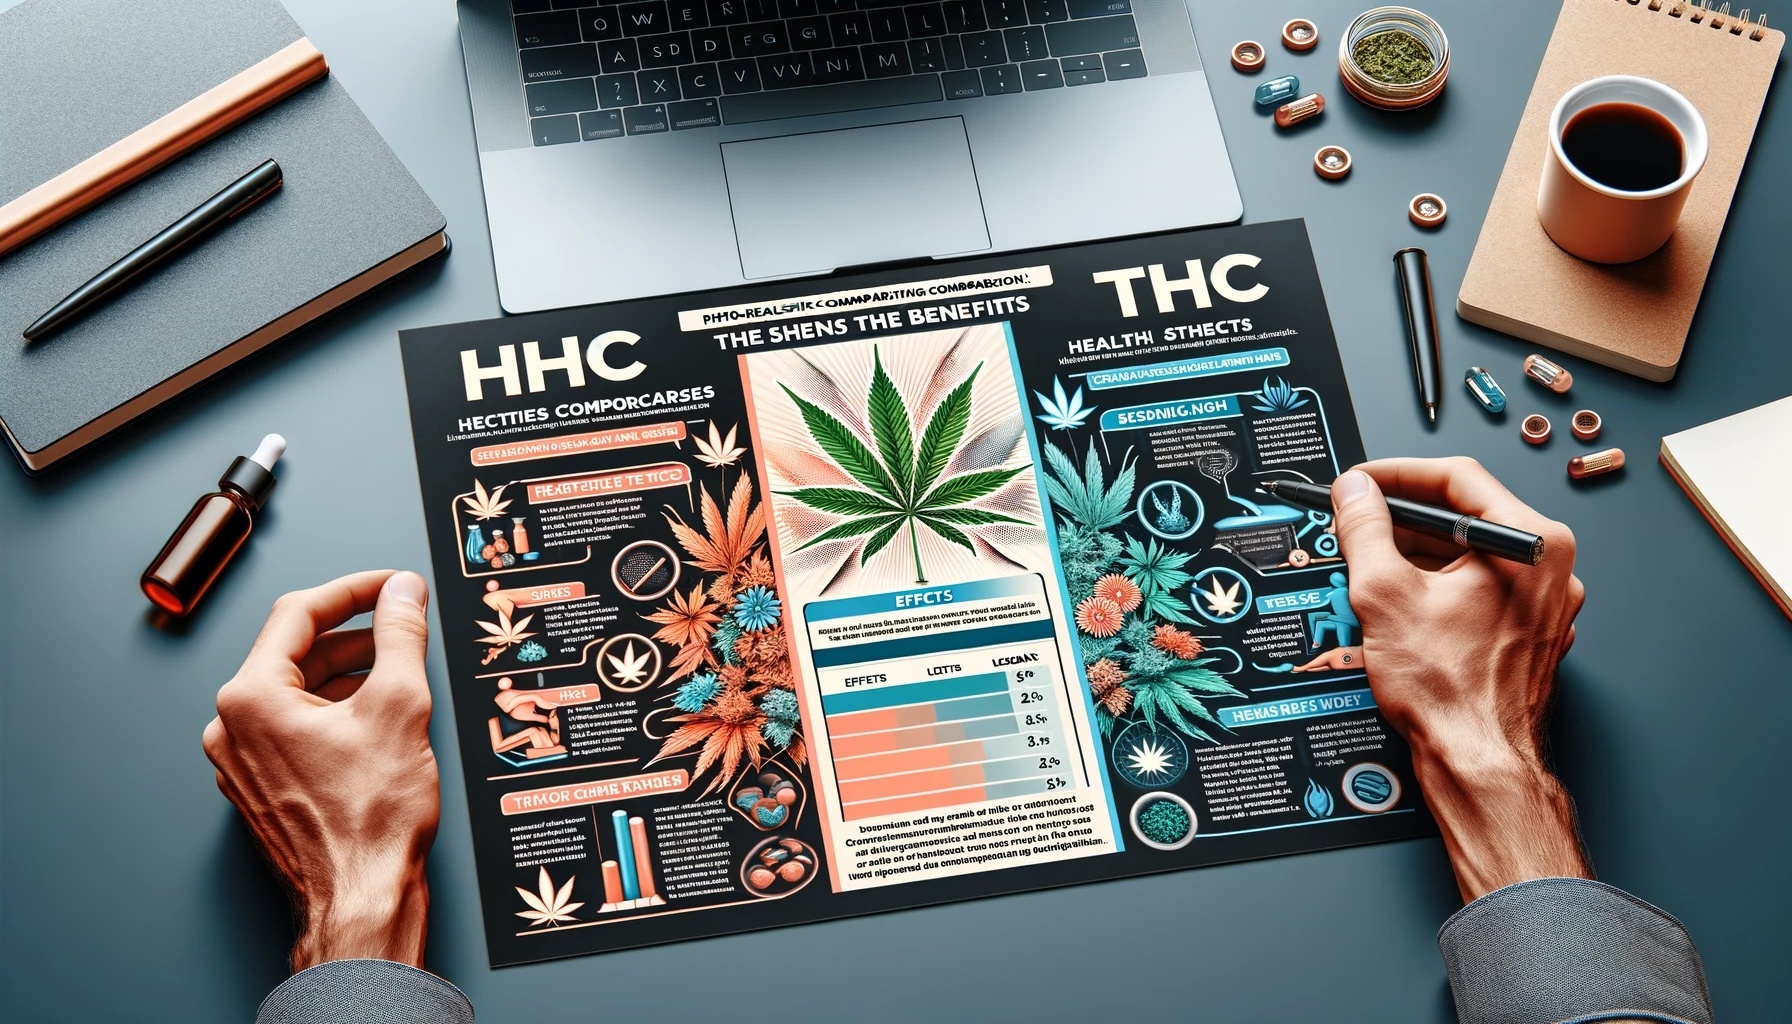 infographic die de voordelen van HHC over THC vergelijkt, met een side-by-side vergelijking van effecten, legaliteit en gezondheidsaspecten in een verfijnd kleurenschema.